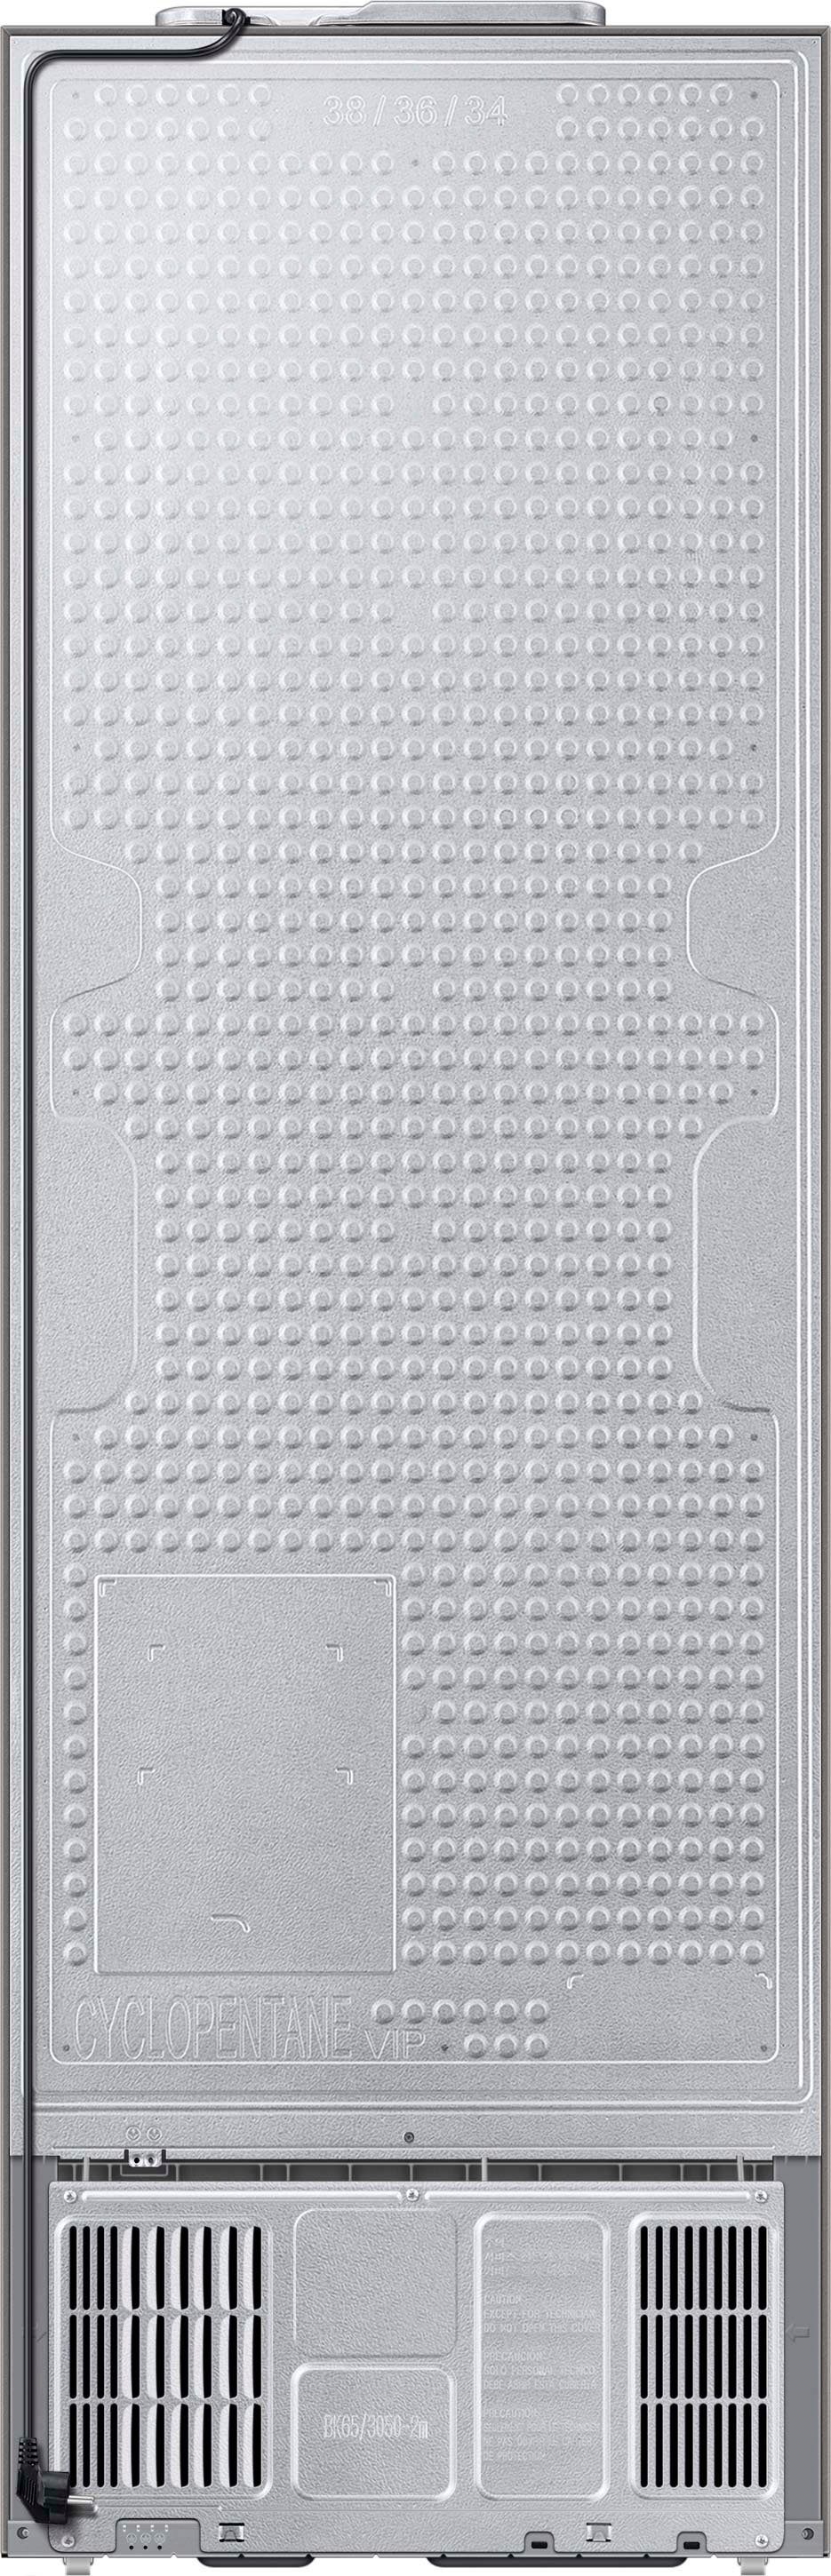 Samsung Kühl-/Gefrierkombination RB7300 cm 185,3 breit RL34C600CSA, cm 59,5 hoch